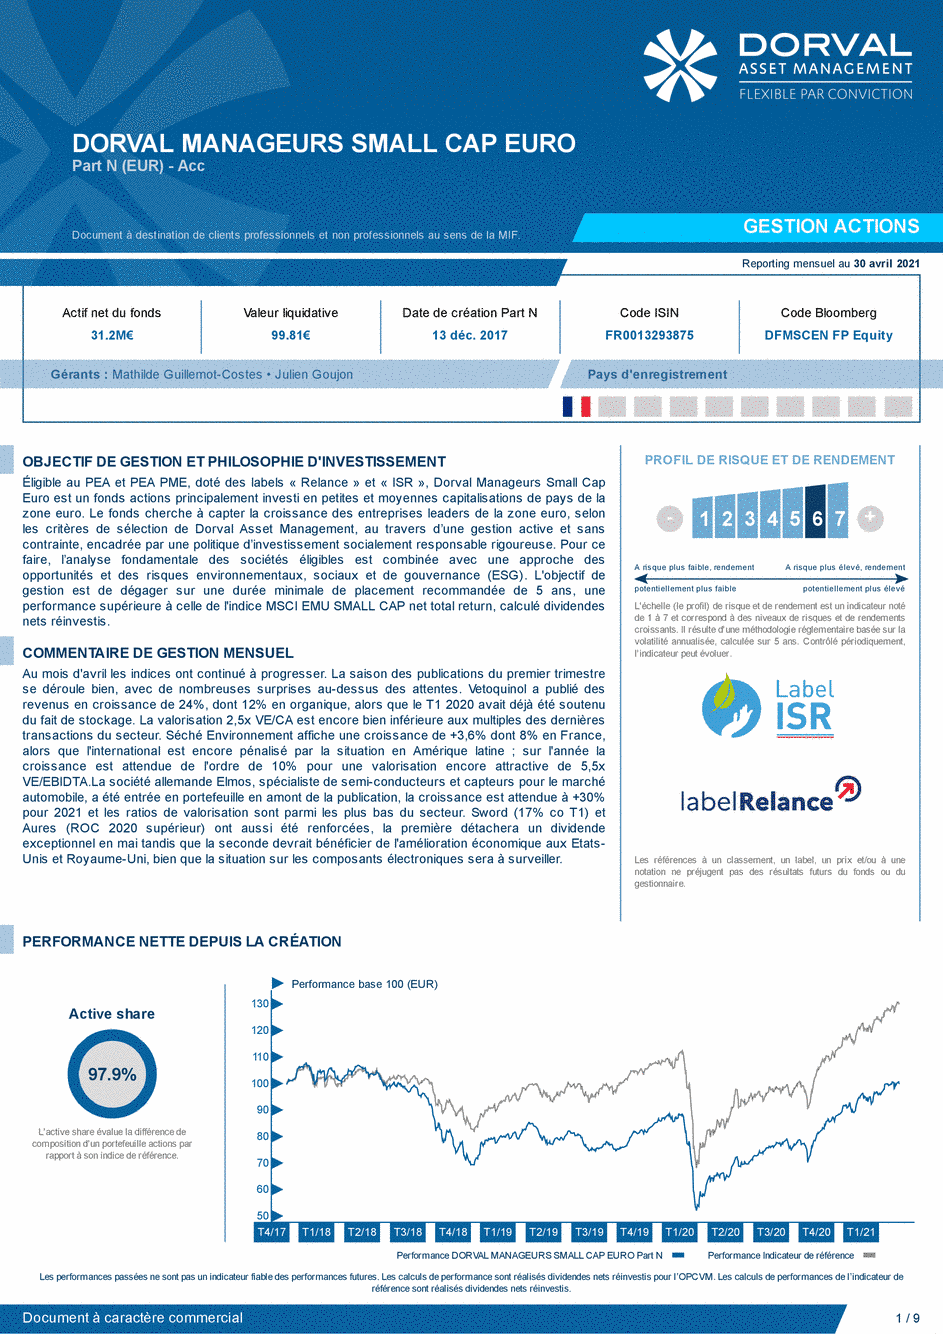 Reporting DORVAL MANAGEURS SMALL CAP EURO N - 30/04/2021 - Français